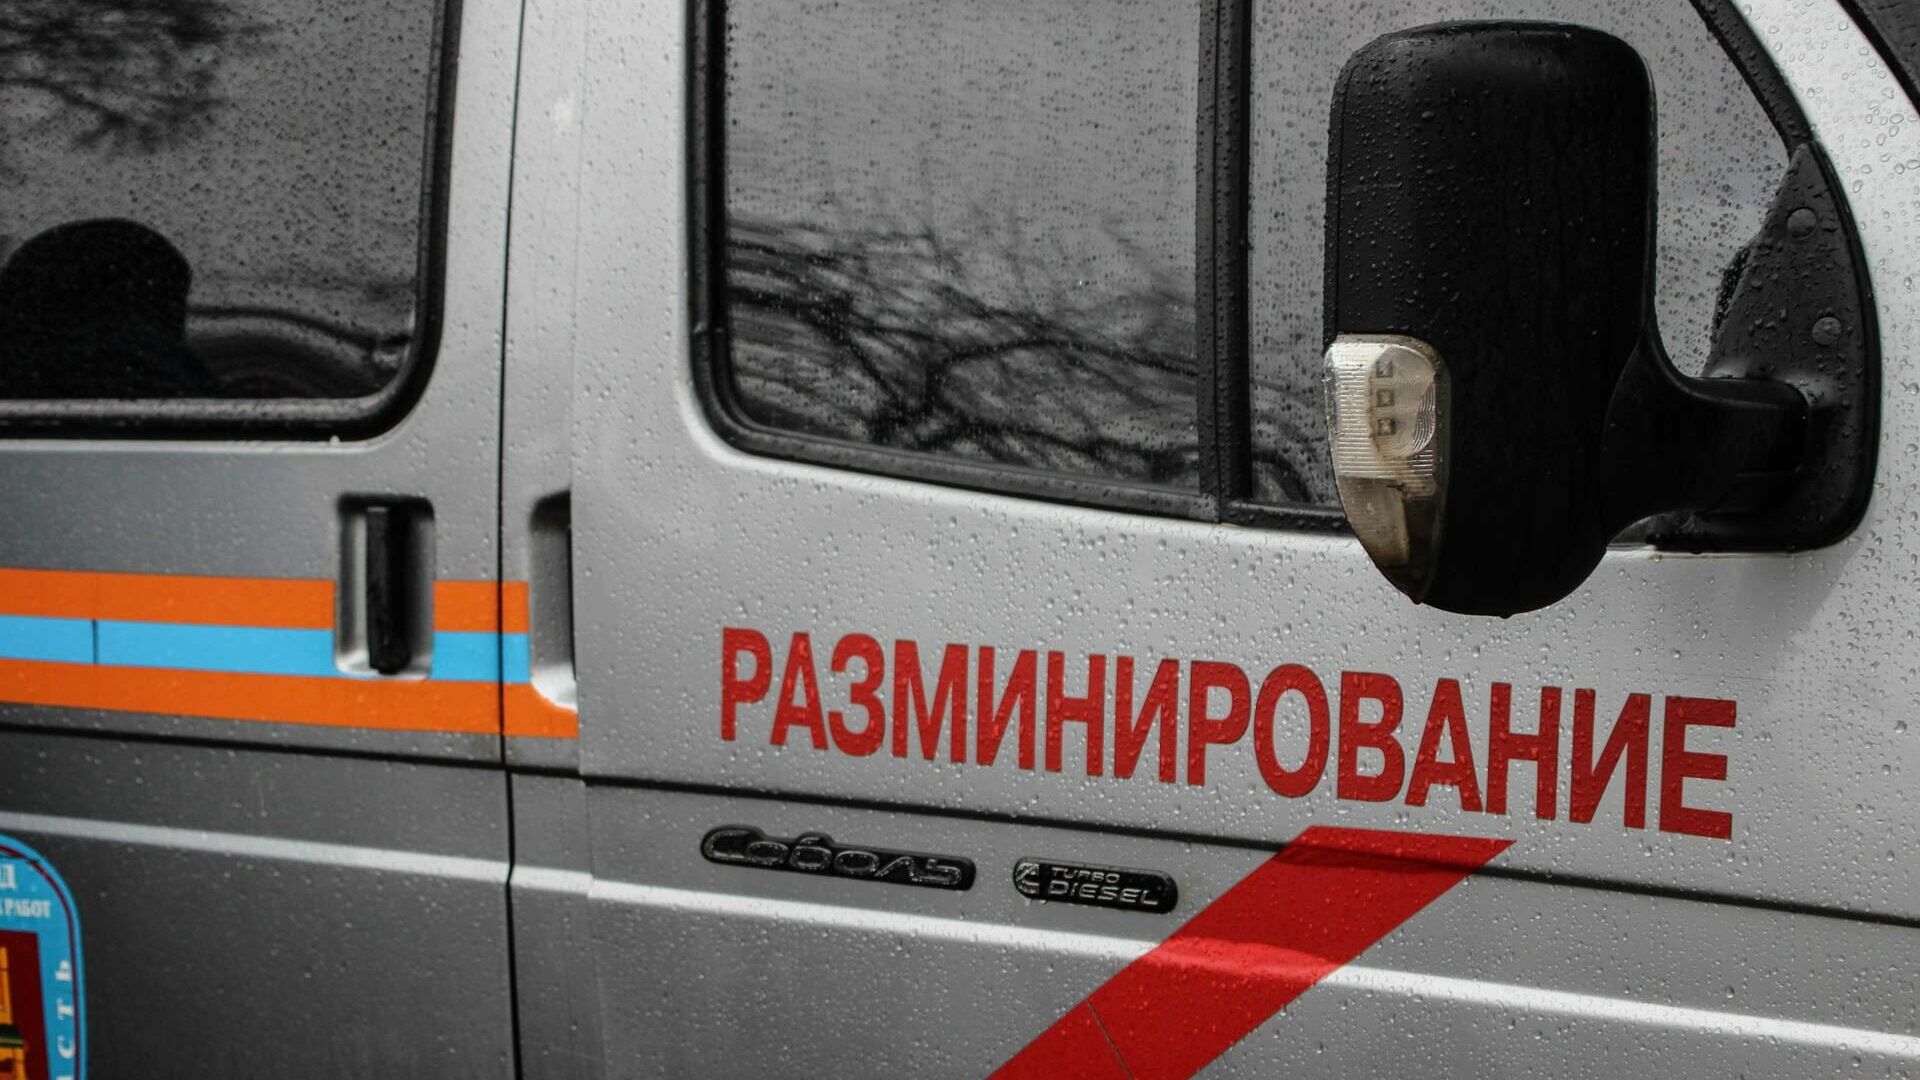 SHOT: на юго-востоке Москве нашли заминированный грузовик